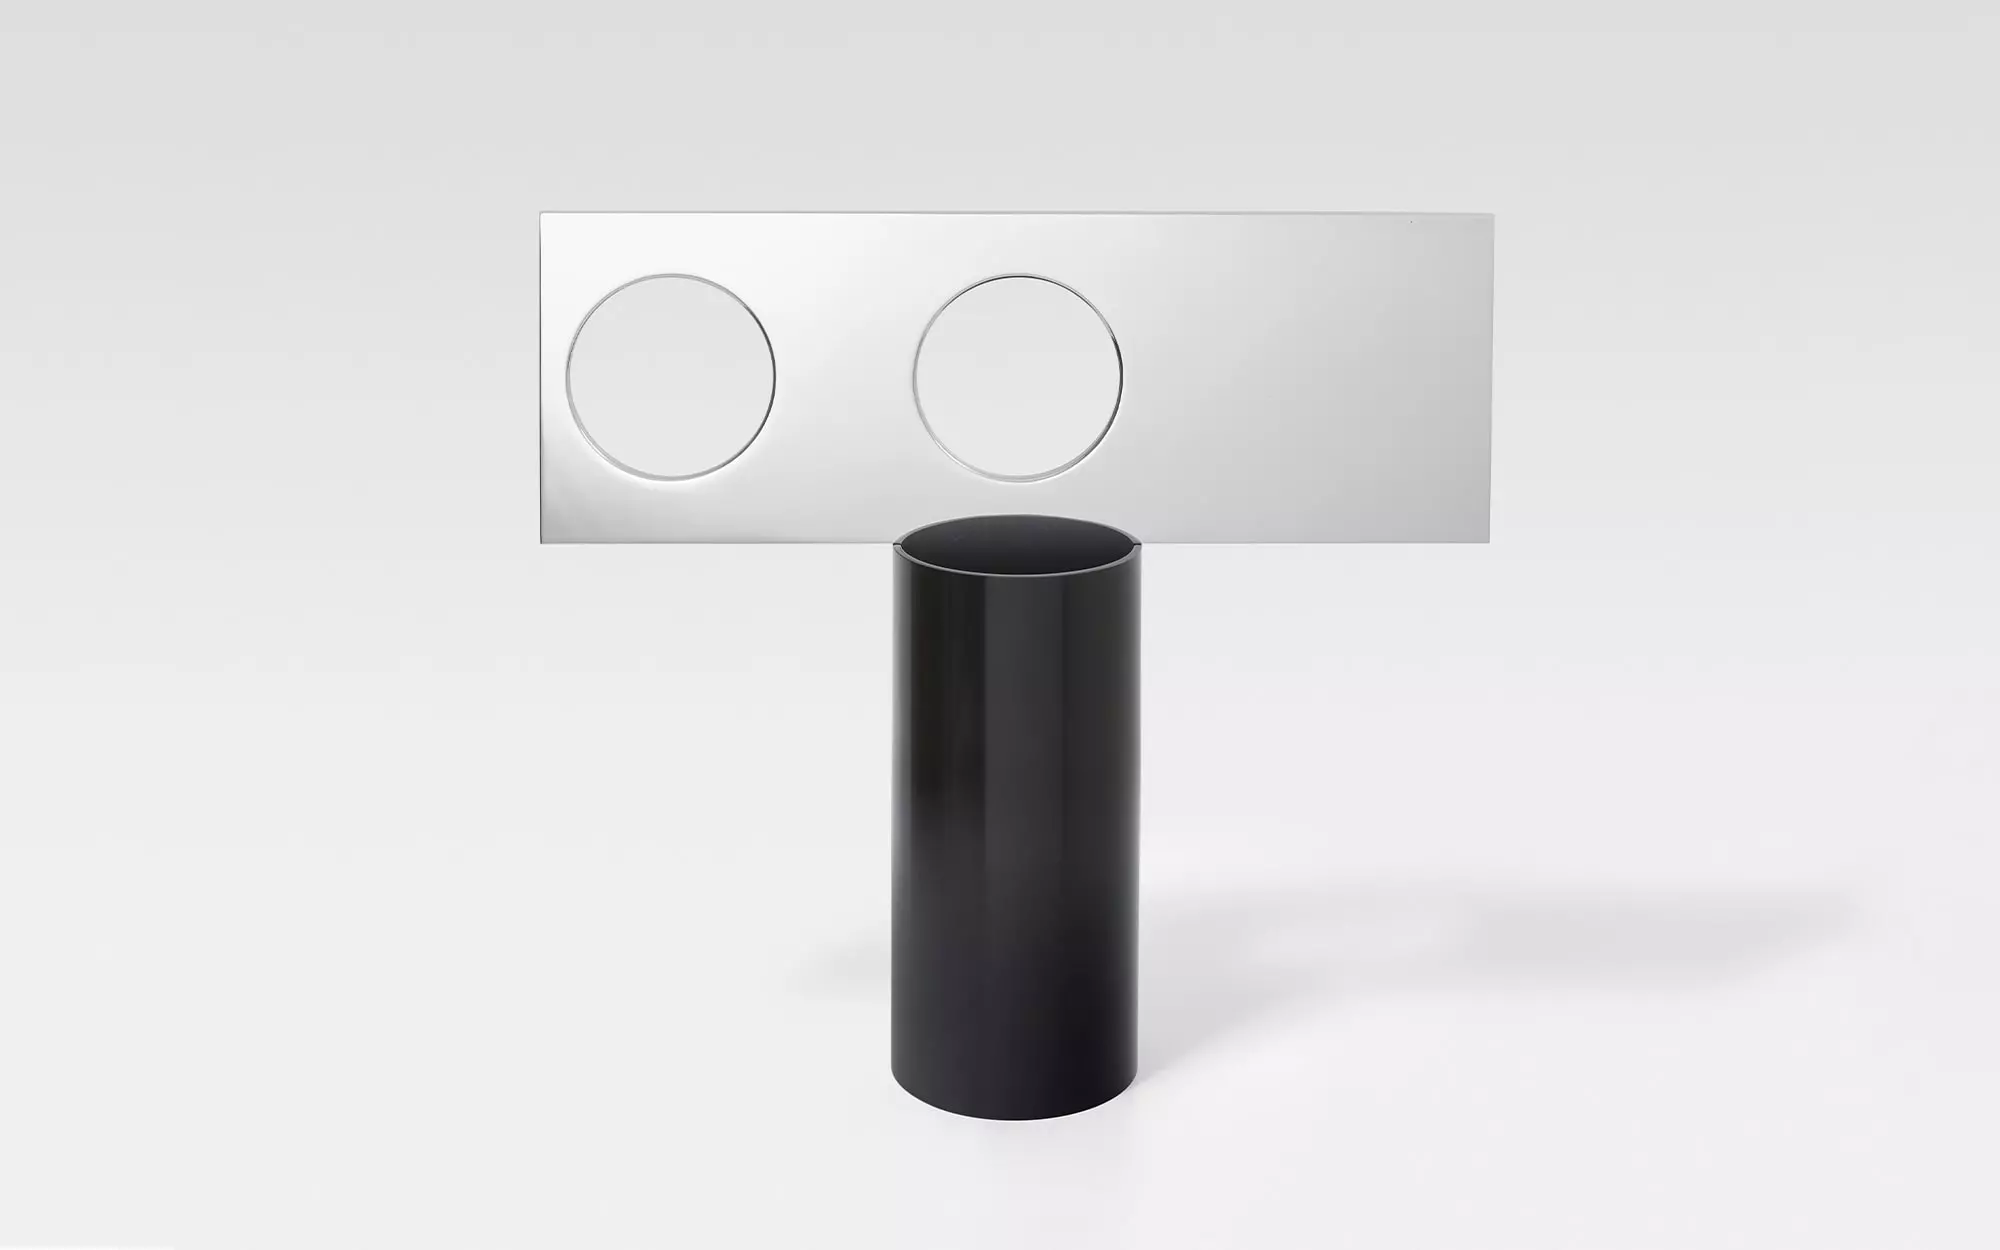 Lunettes - 3 Vase - Pierre Charpin - Pendant light - Galerie kreo